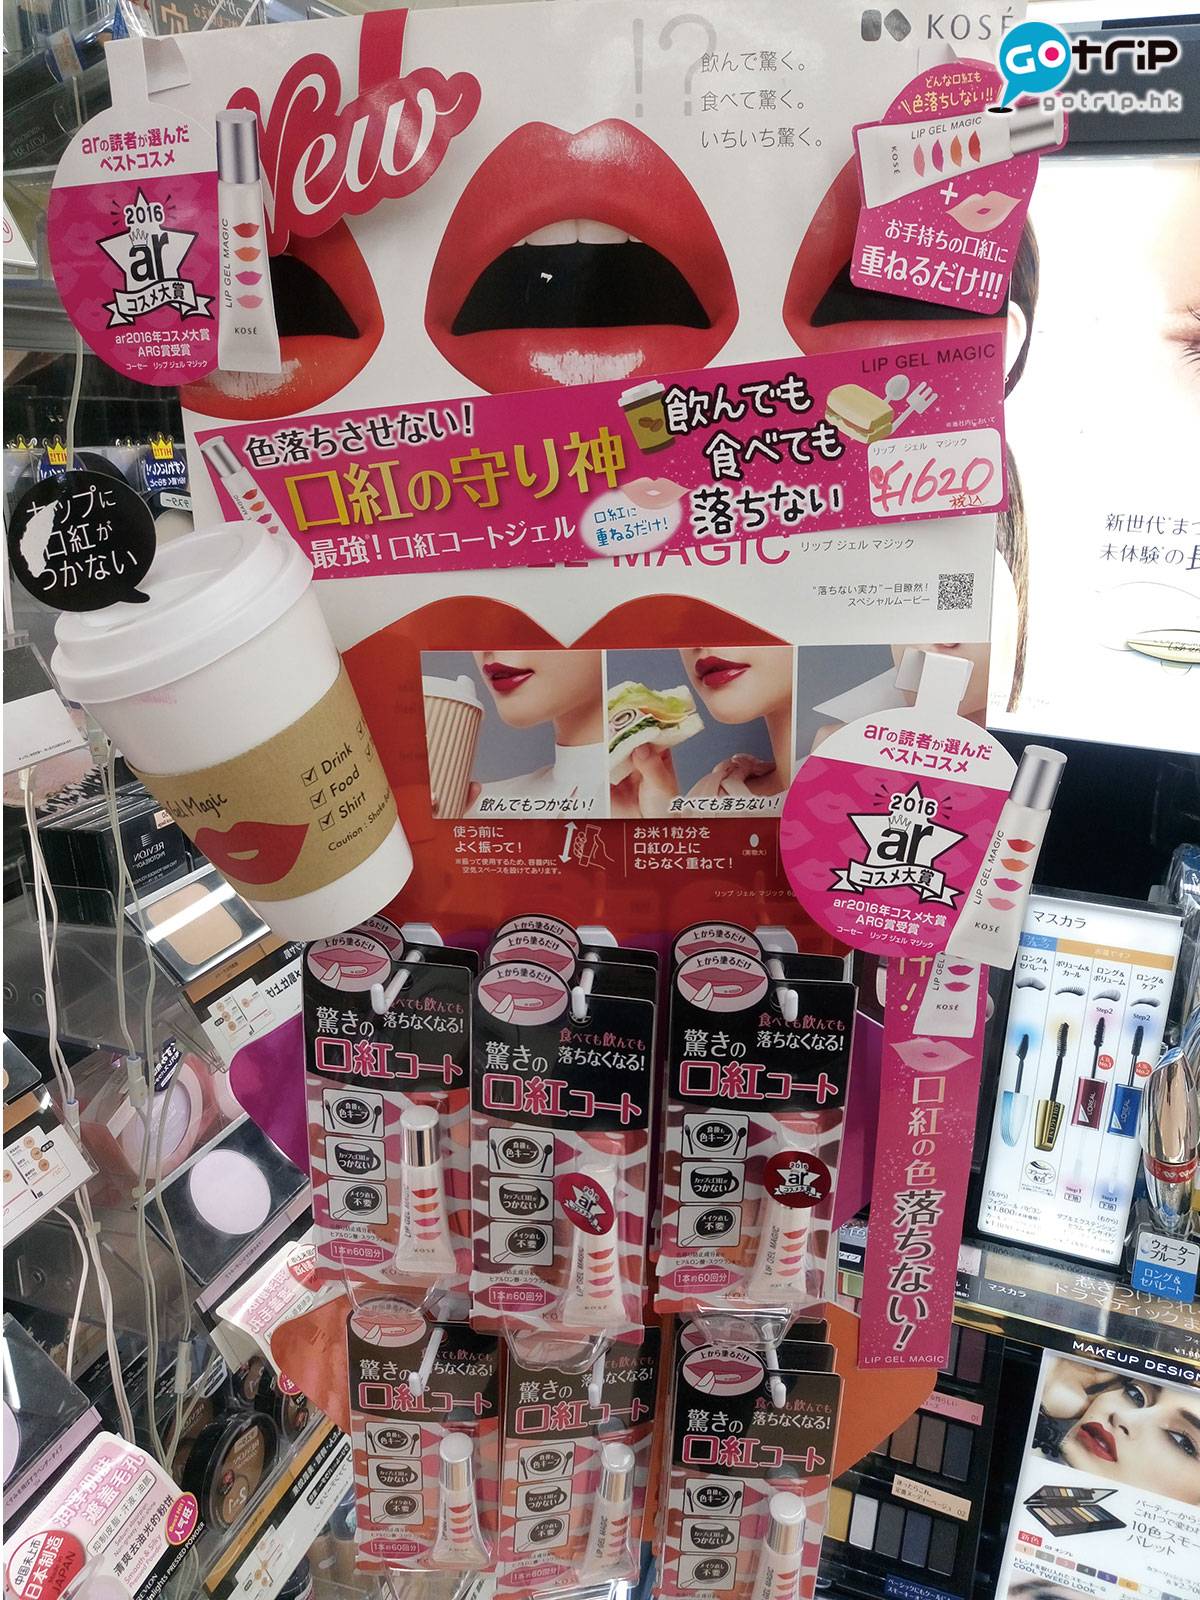 日本化妝品 1支約可用60次，編輯也入手了1支，試用後口紅的確沒而脫色，上班整天也不用補色，美中不足是有點乾，記得搽潤唇膏打底。